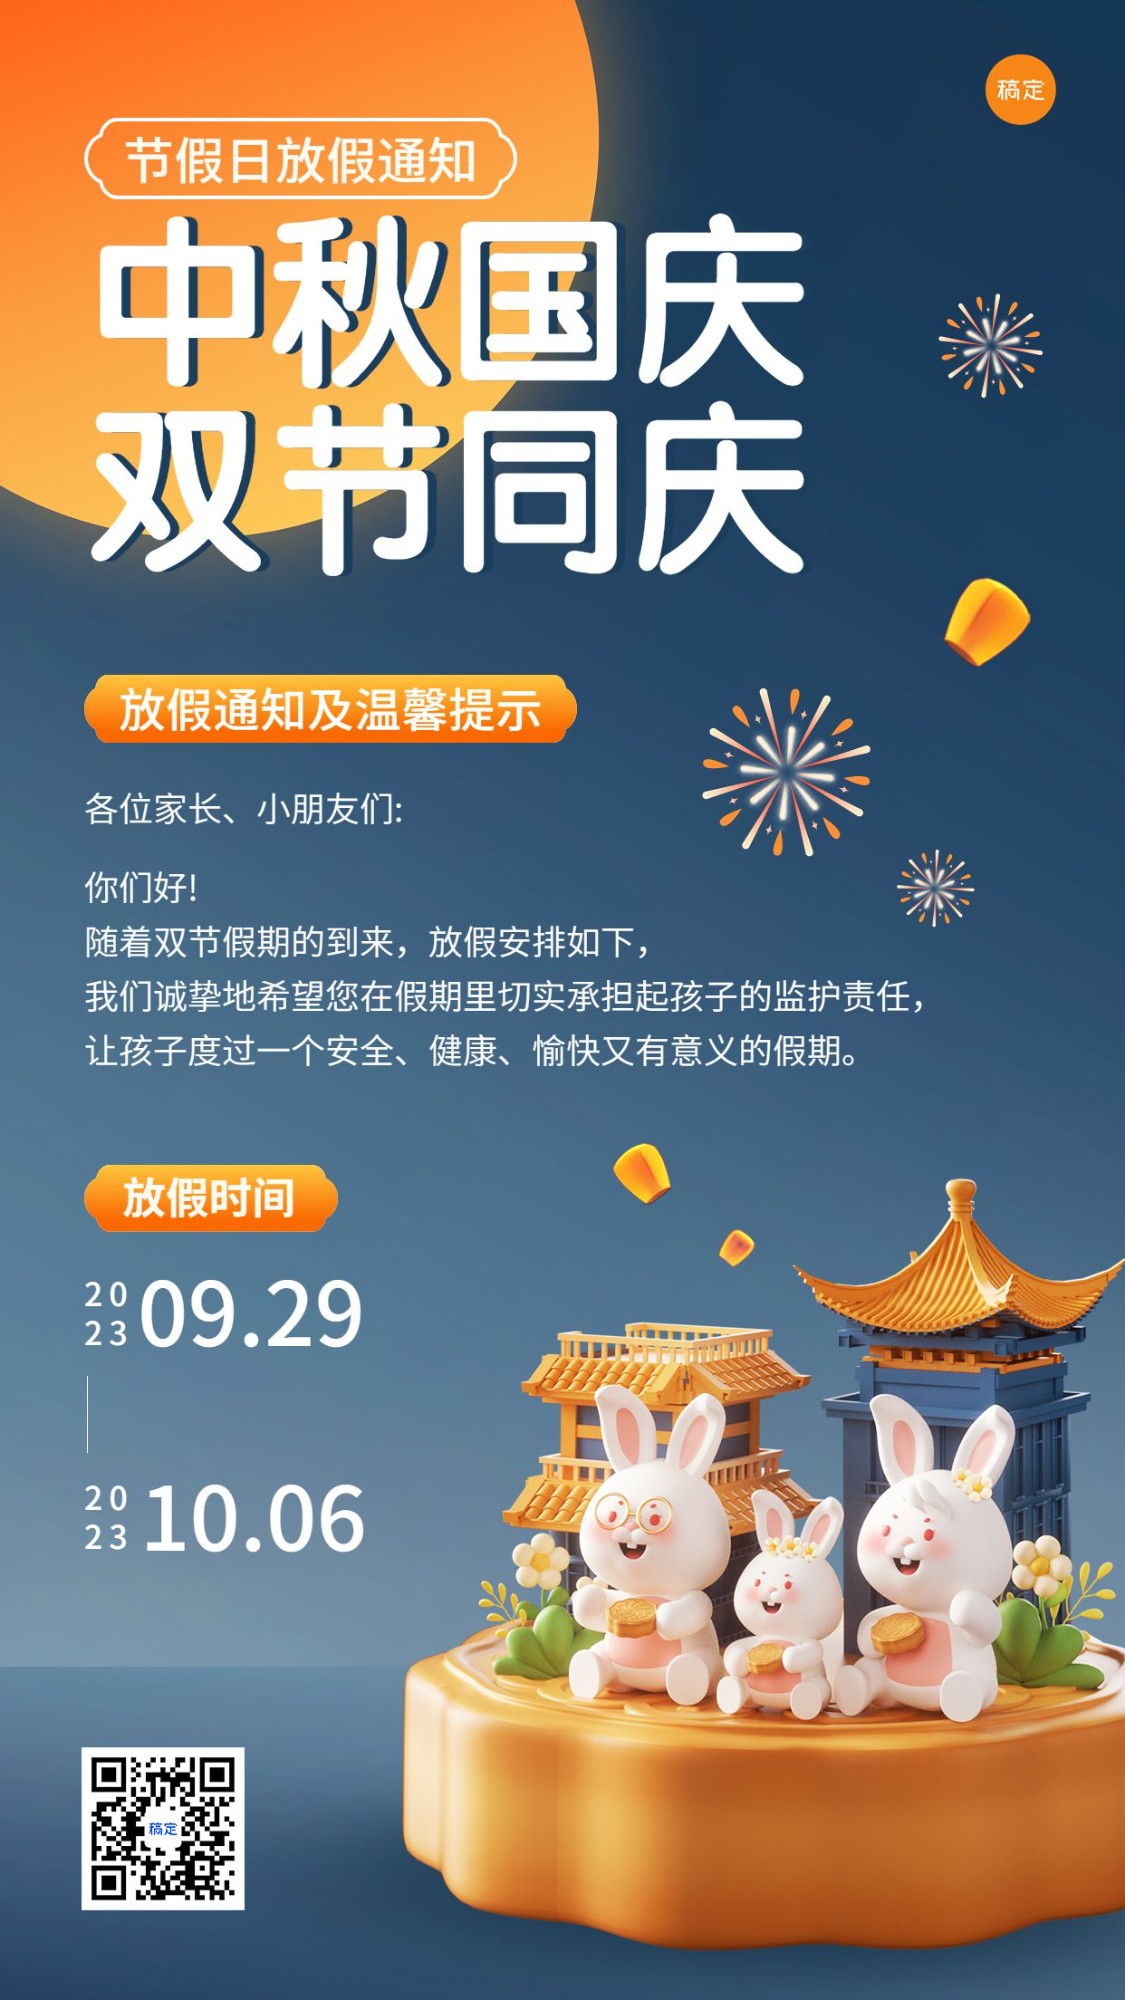 中秋节国庆节兴趣班放假通软3D风格手机海报